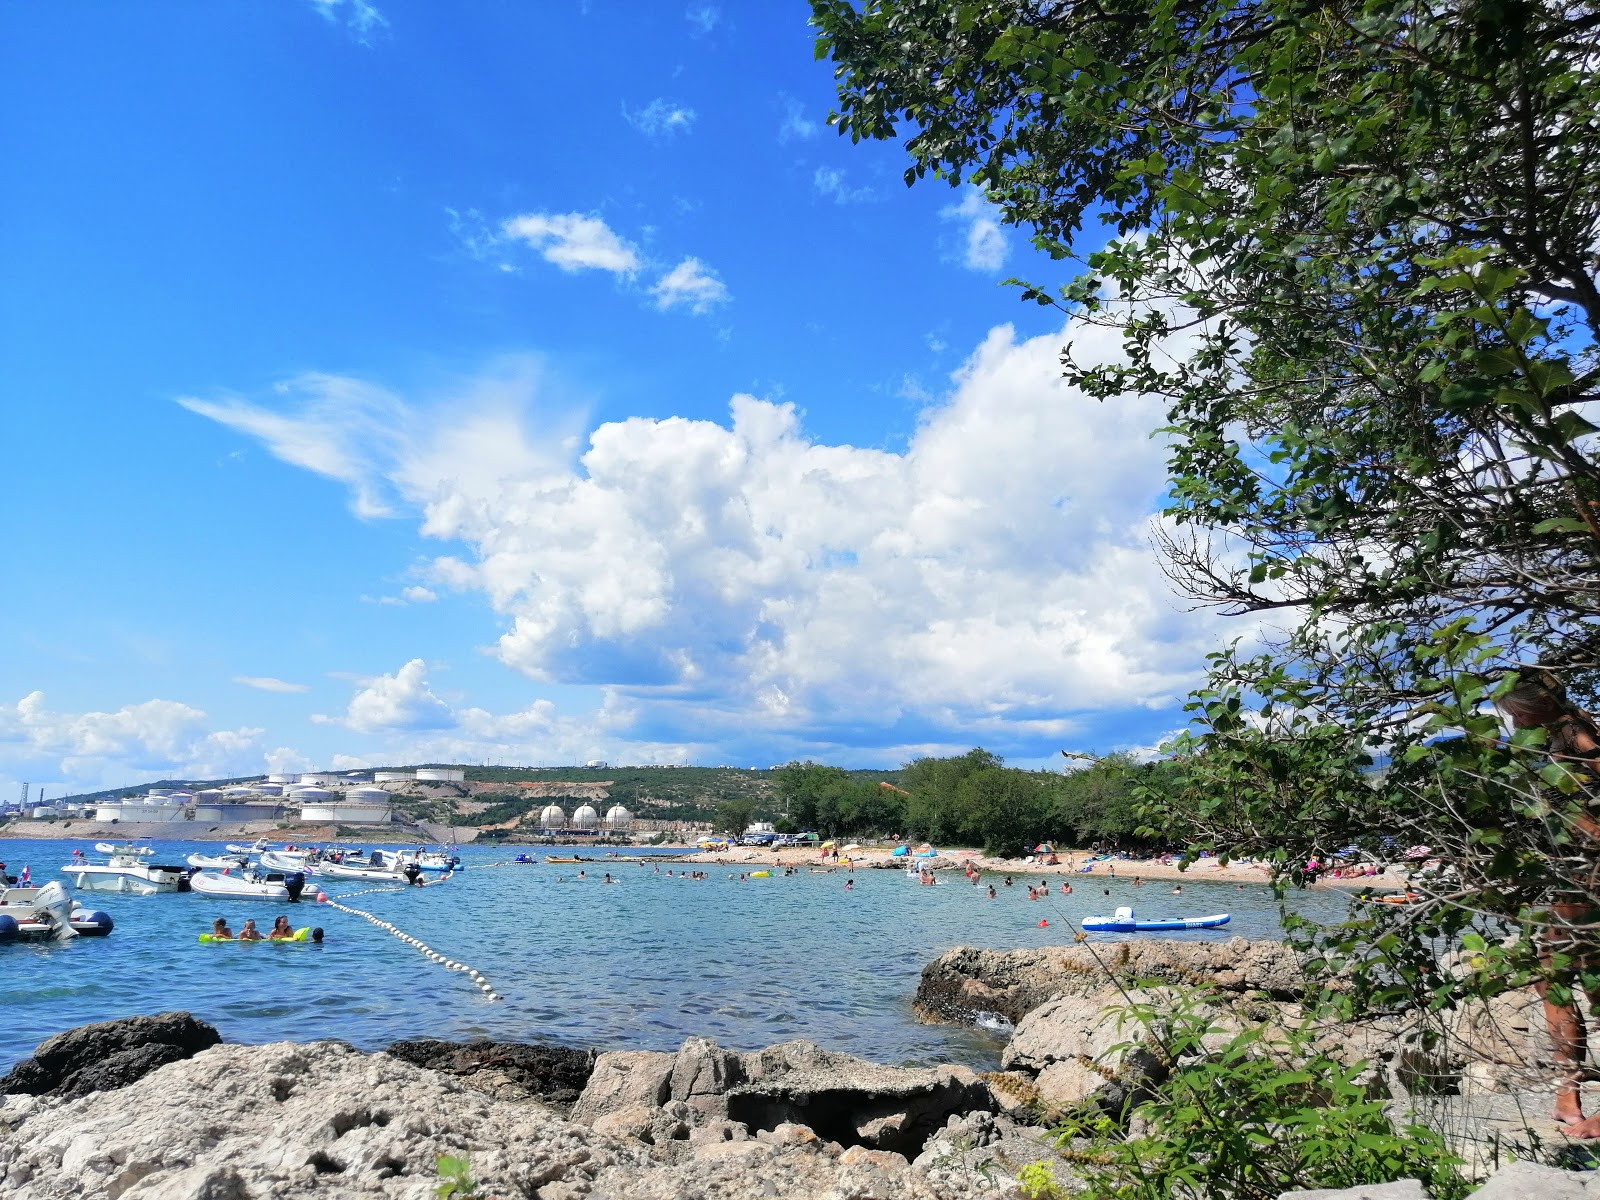 Foto av Ostro beach med turkosa vatten yta